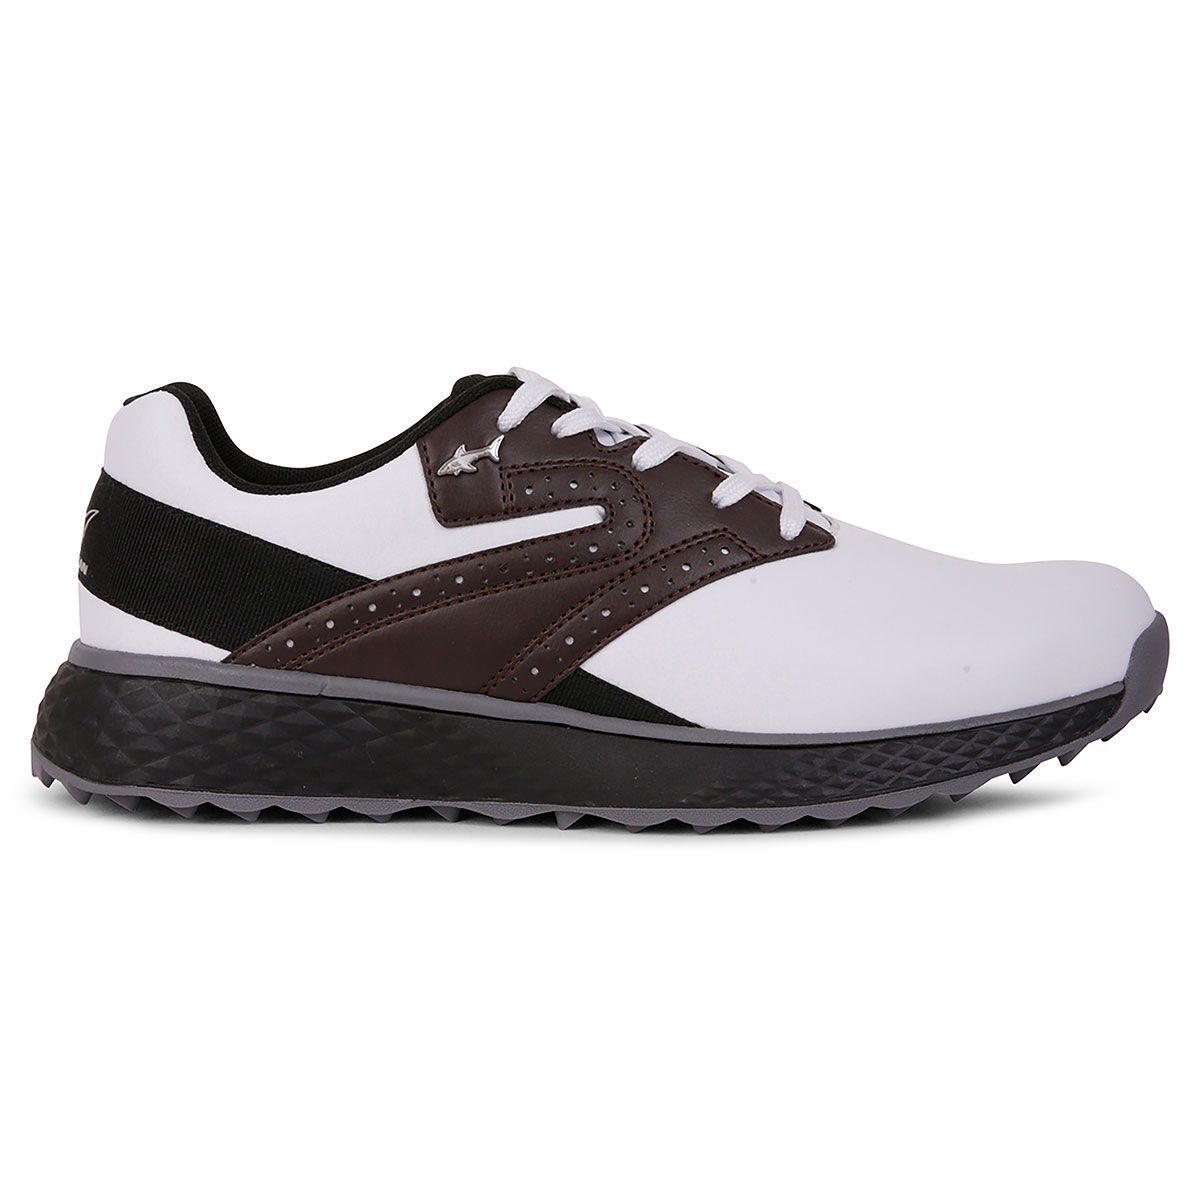 Chaussures Greg Norman Maidens, homme, 7, Blanc/Brun | Online Golf